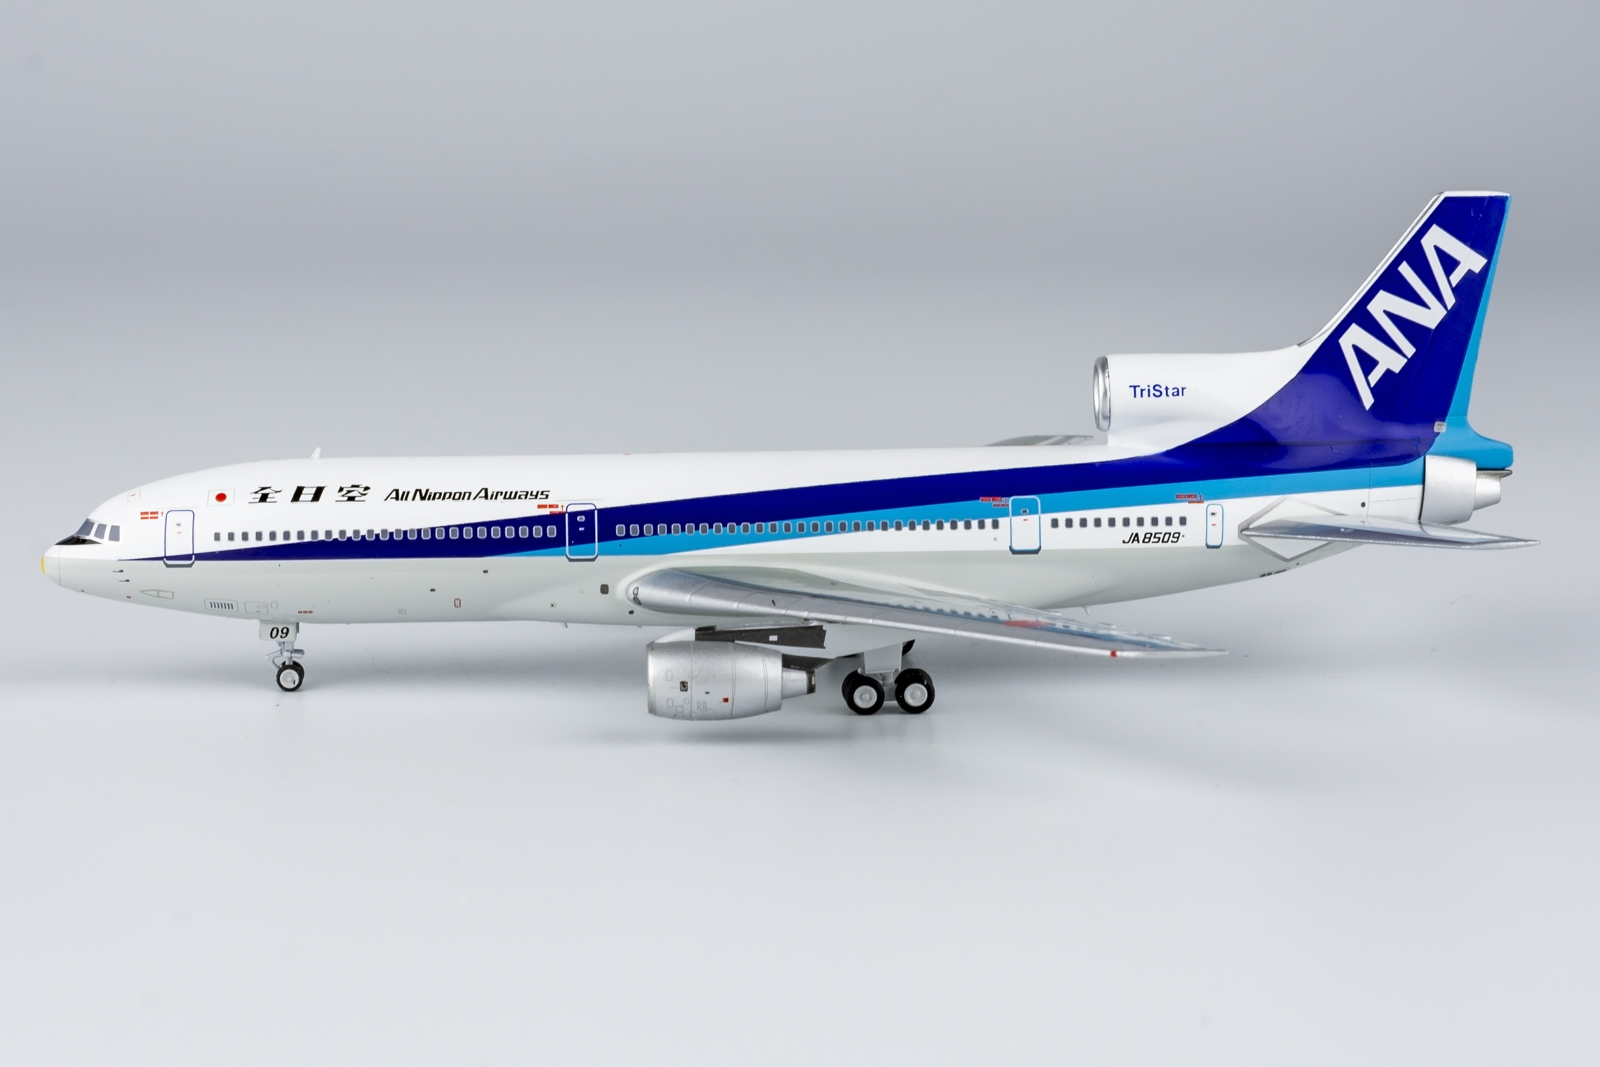 NG Models 1:400 ANA All Nippon Airways JA8509 Lockhead L-1011-1 